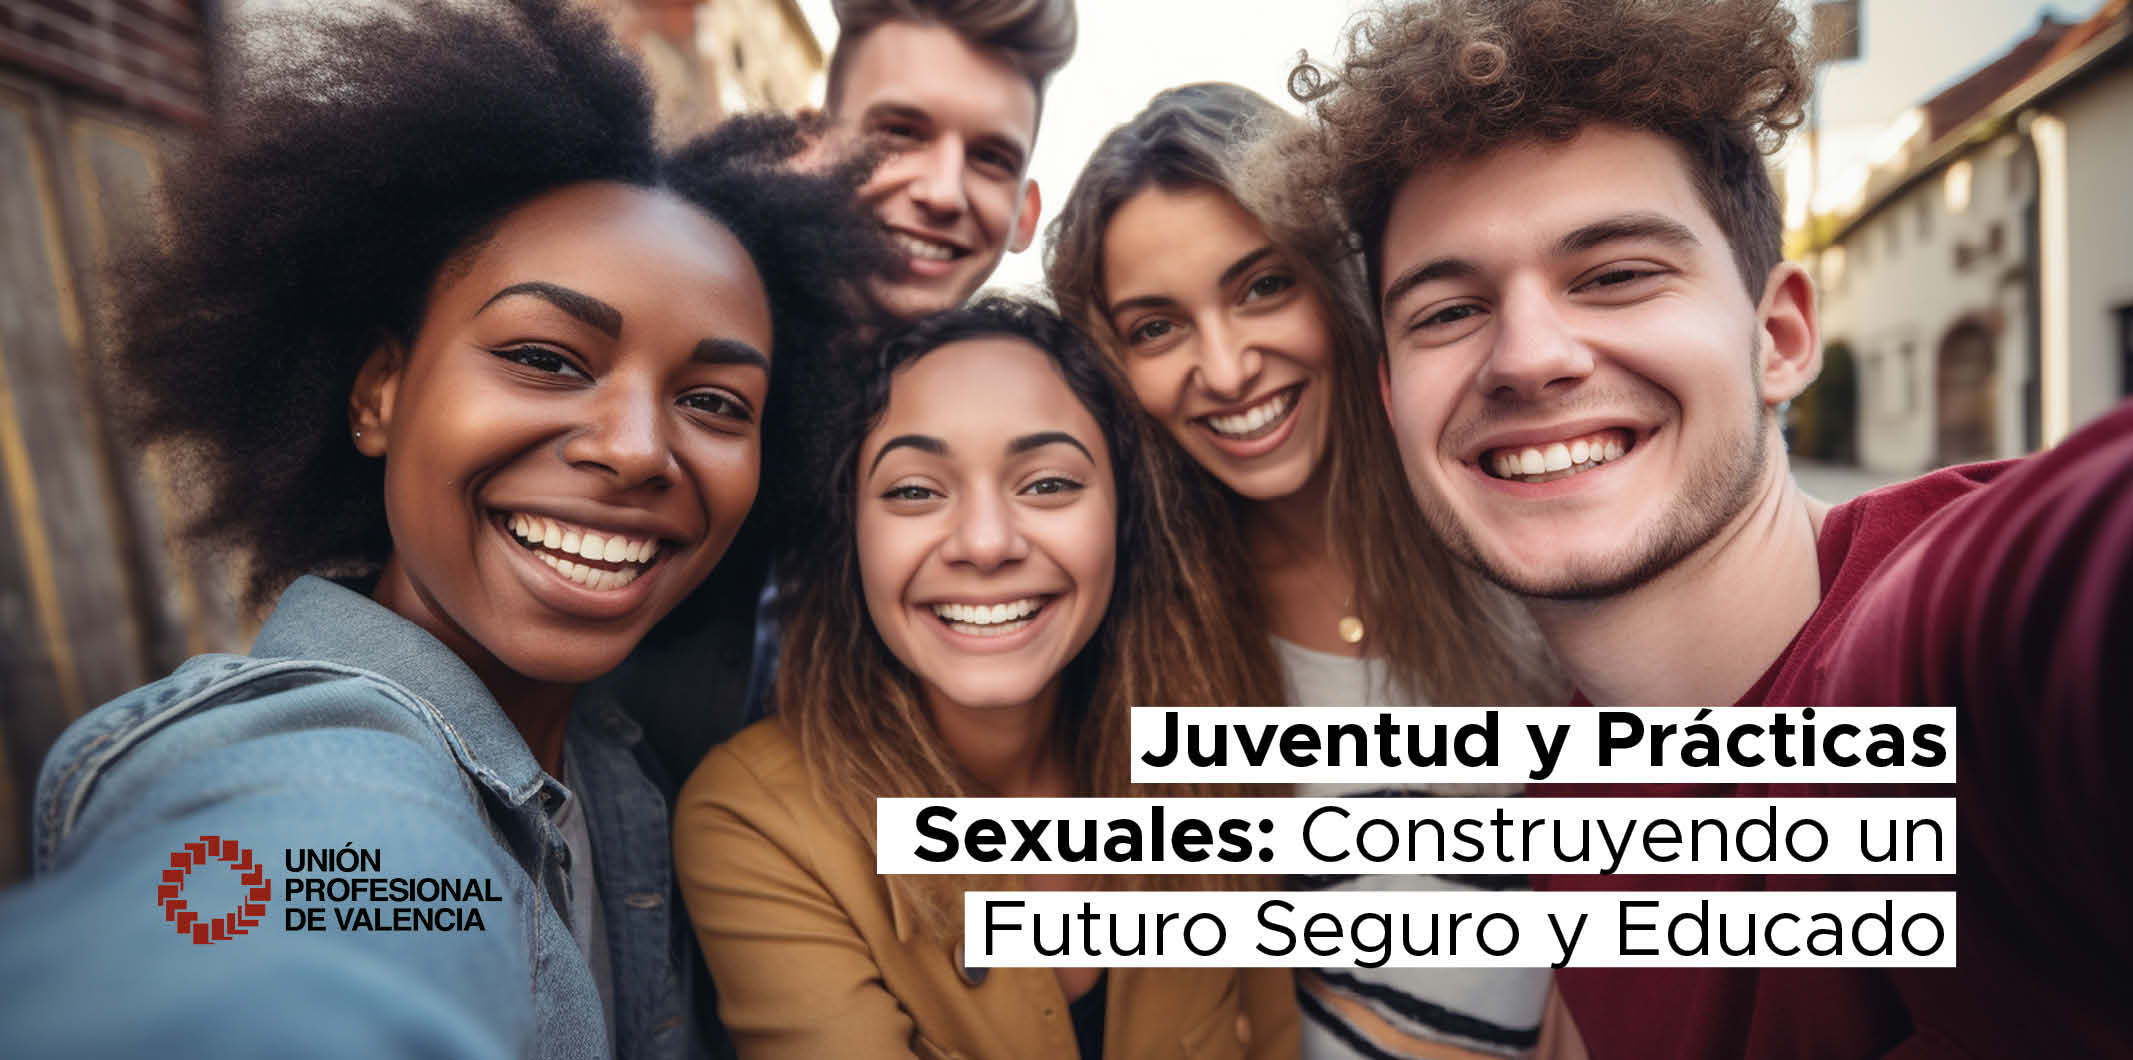 Juventud y Prácticas Sexuales: Construyendo un Futuro Seguro y Educado